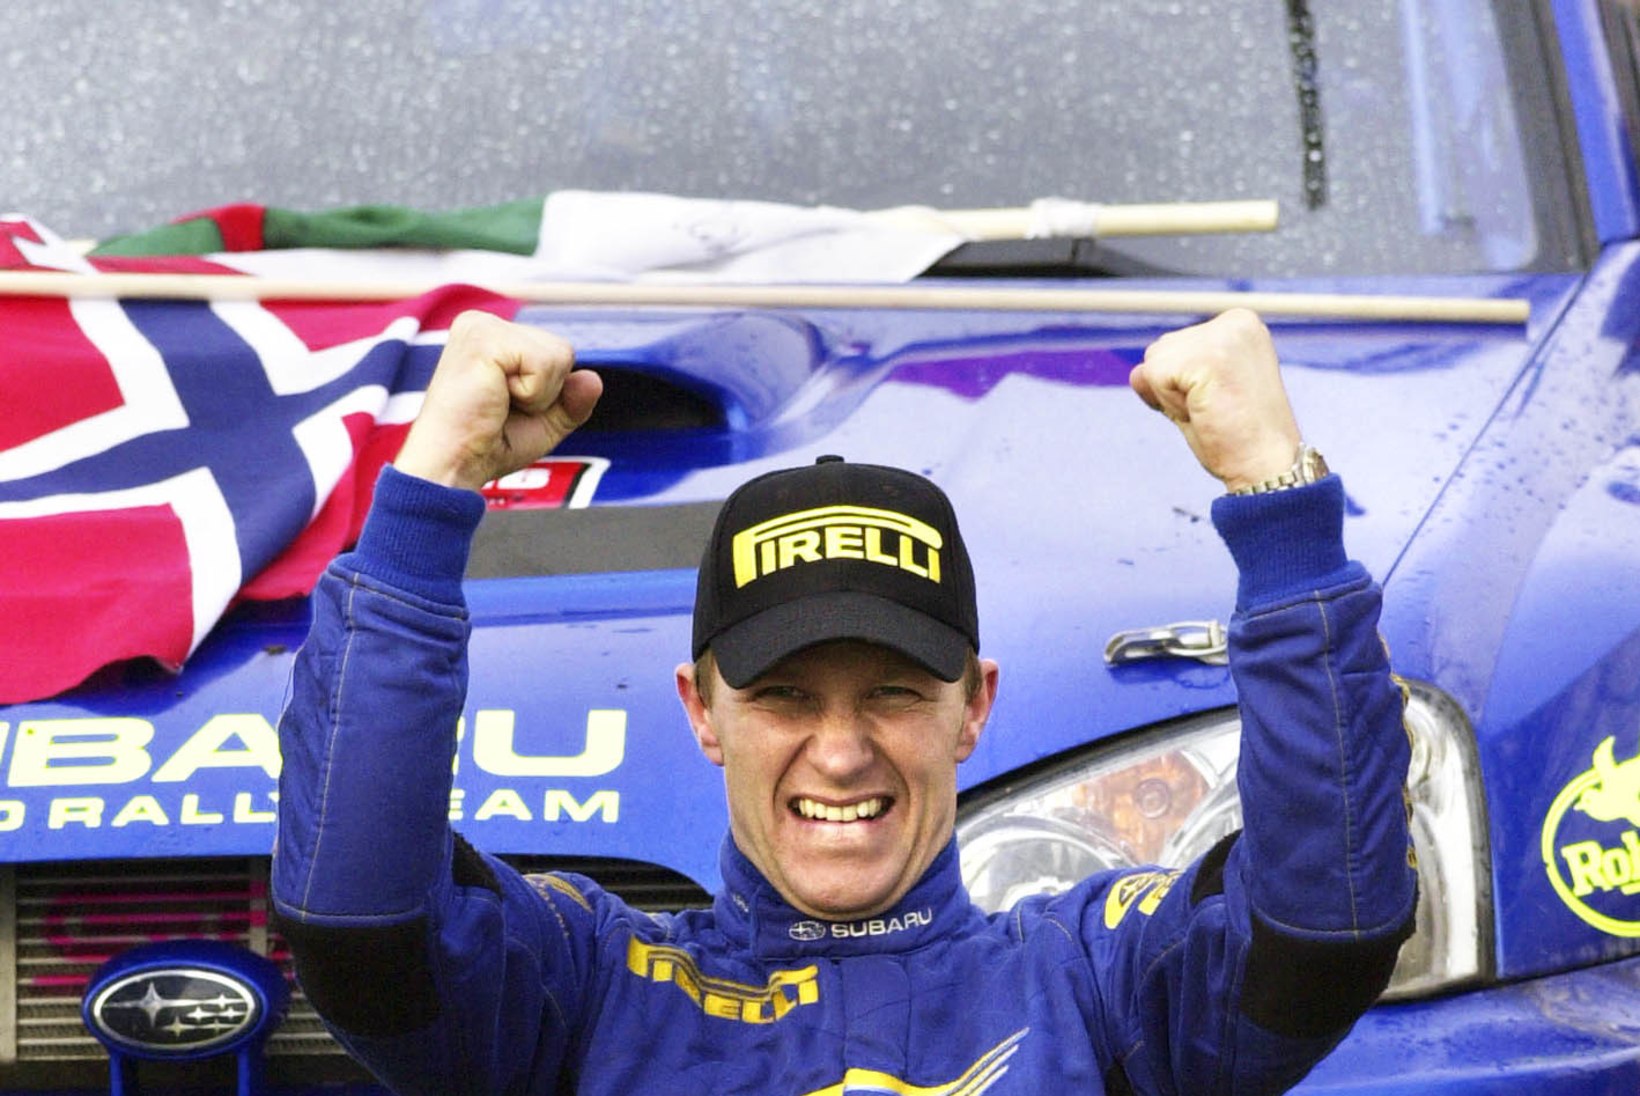 Miks jäi Räikkönen auhinnata? Kus veel rallisõitjad kaardilugejast lahku lüüakse?